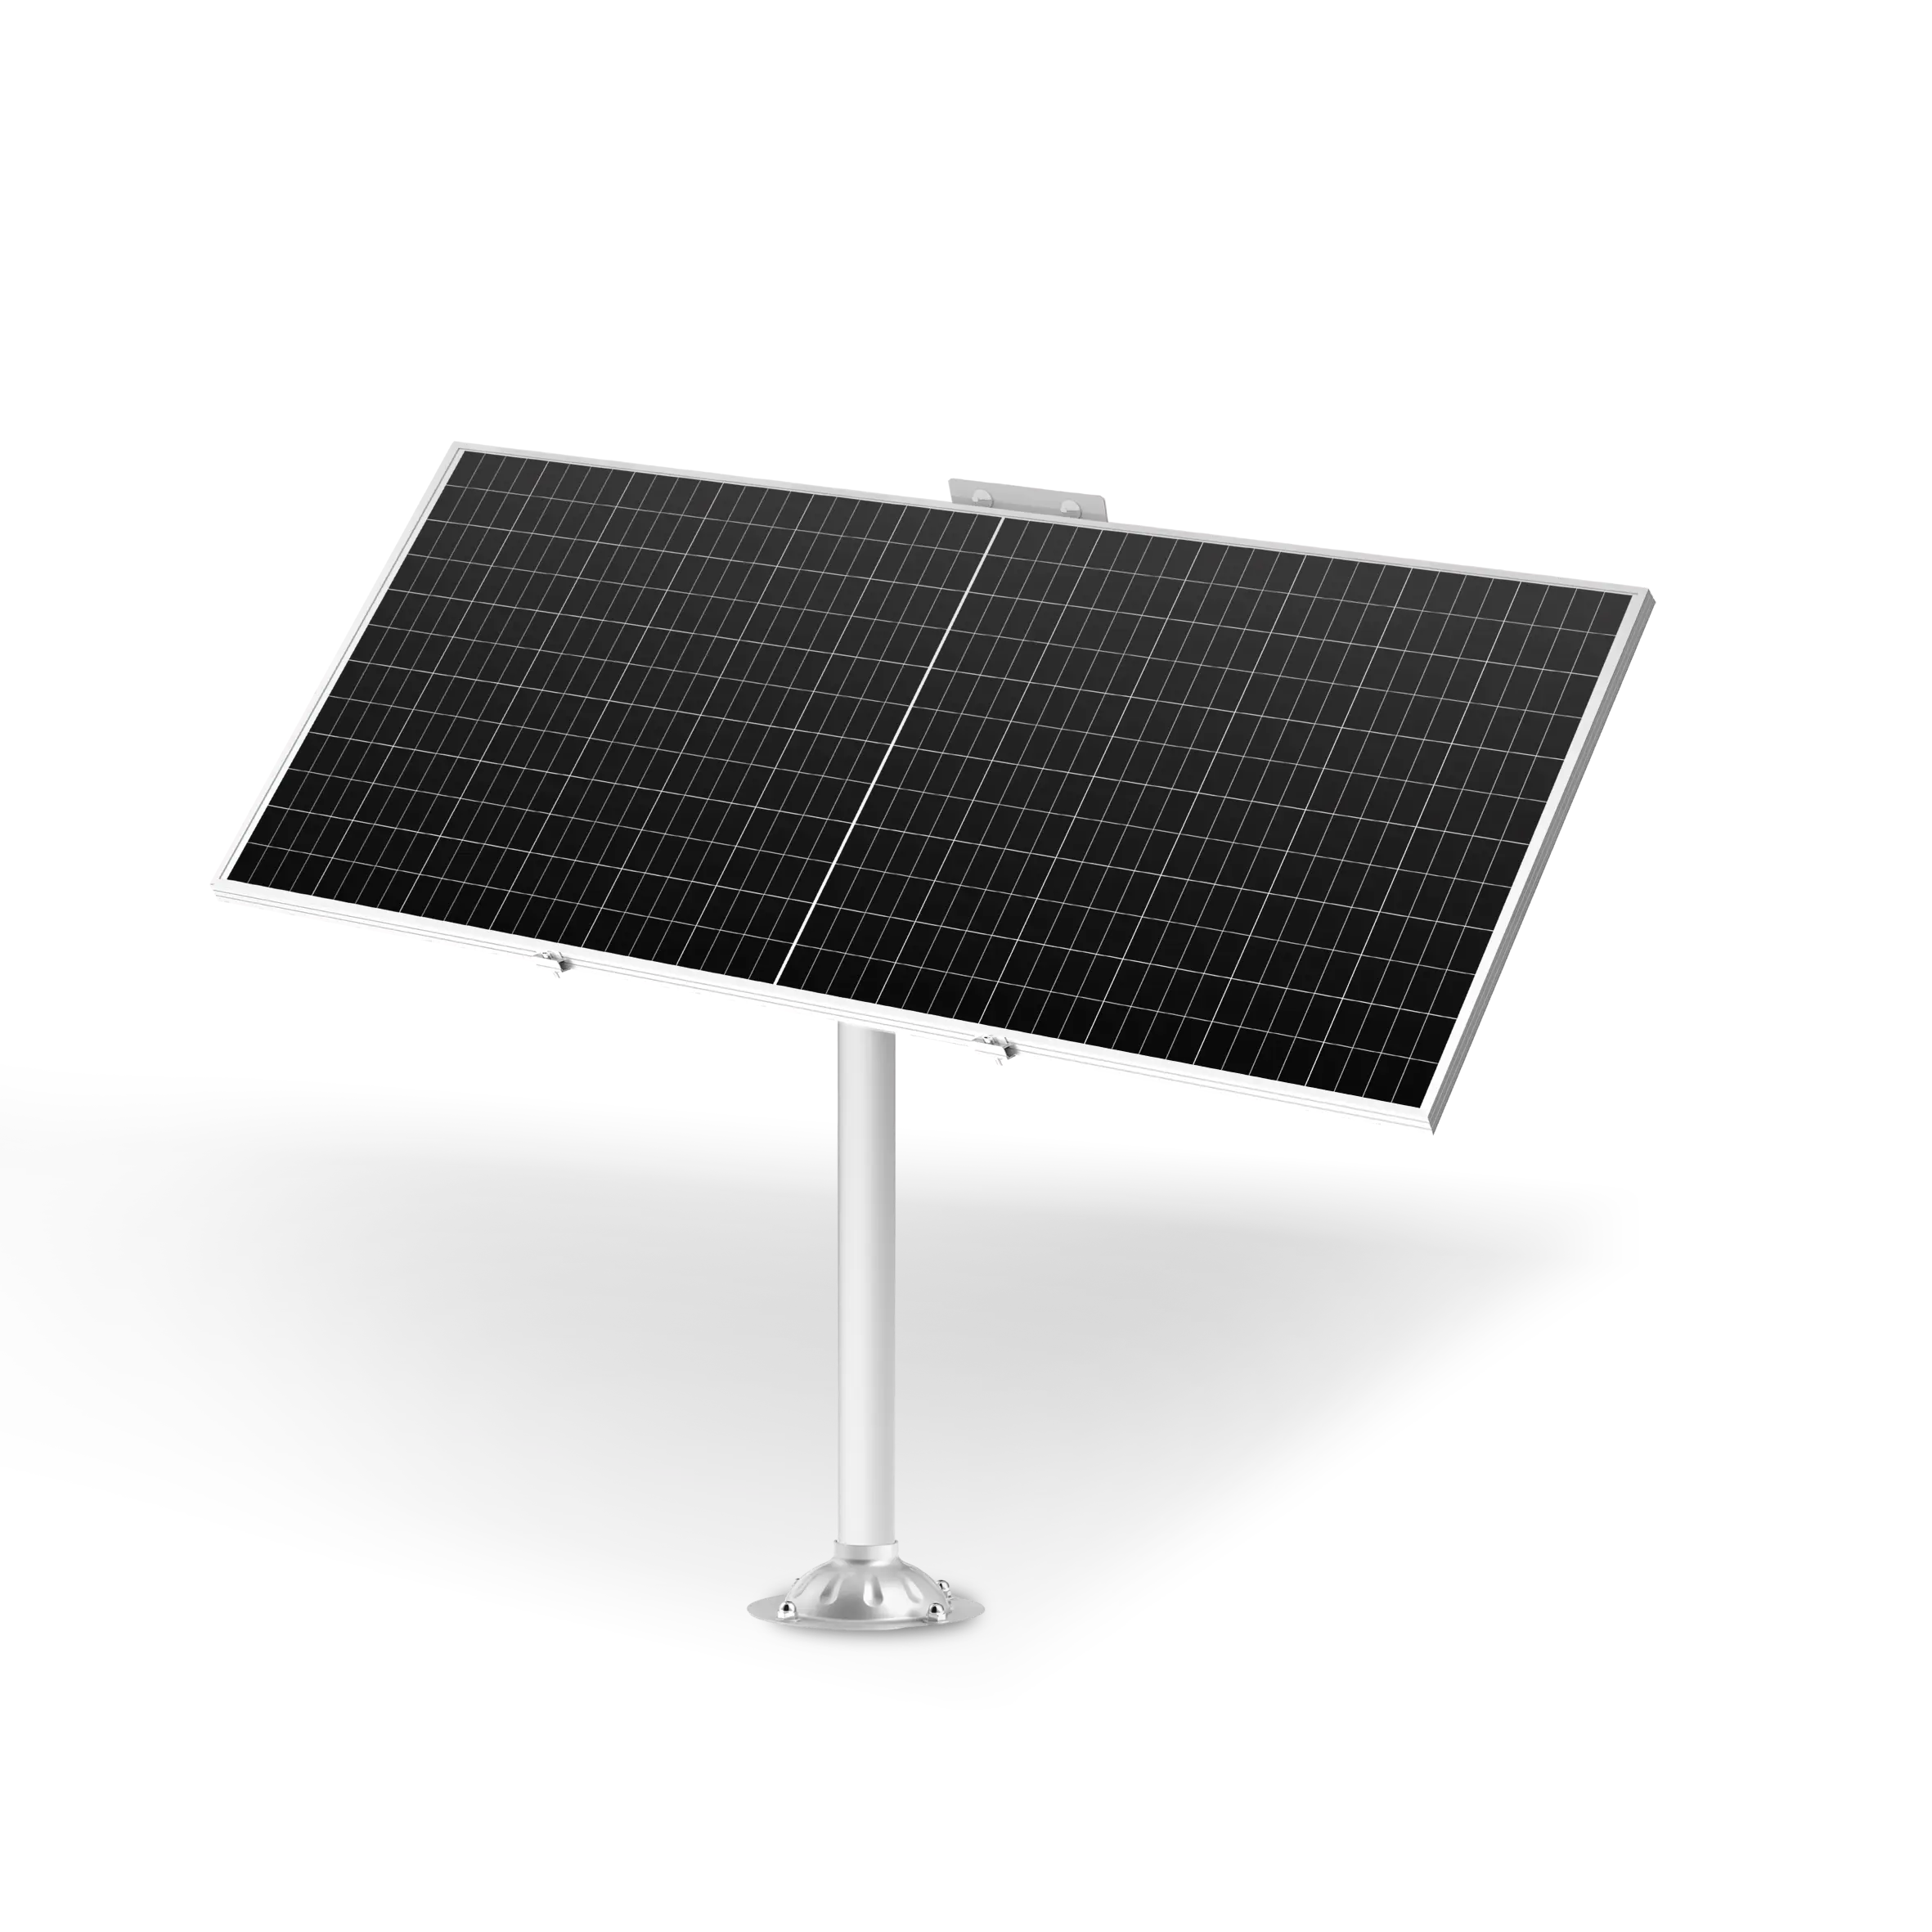 DC Times Caja solar 1KW 5KW 10KW Generación de energía fotovoltaica paralela infinita Sistema de panel solar de red híbrida